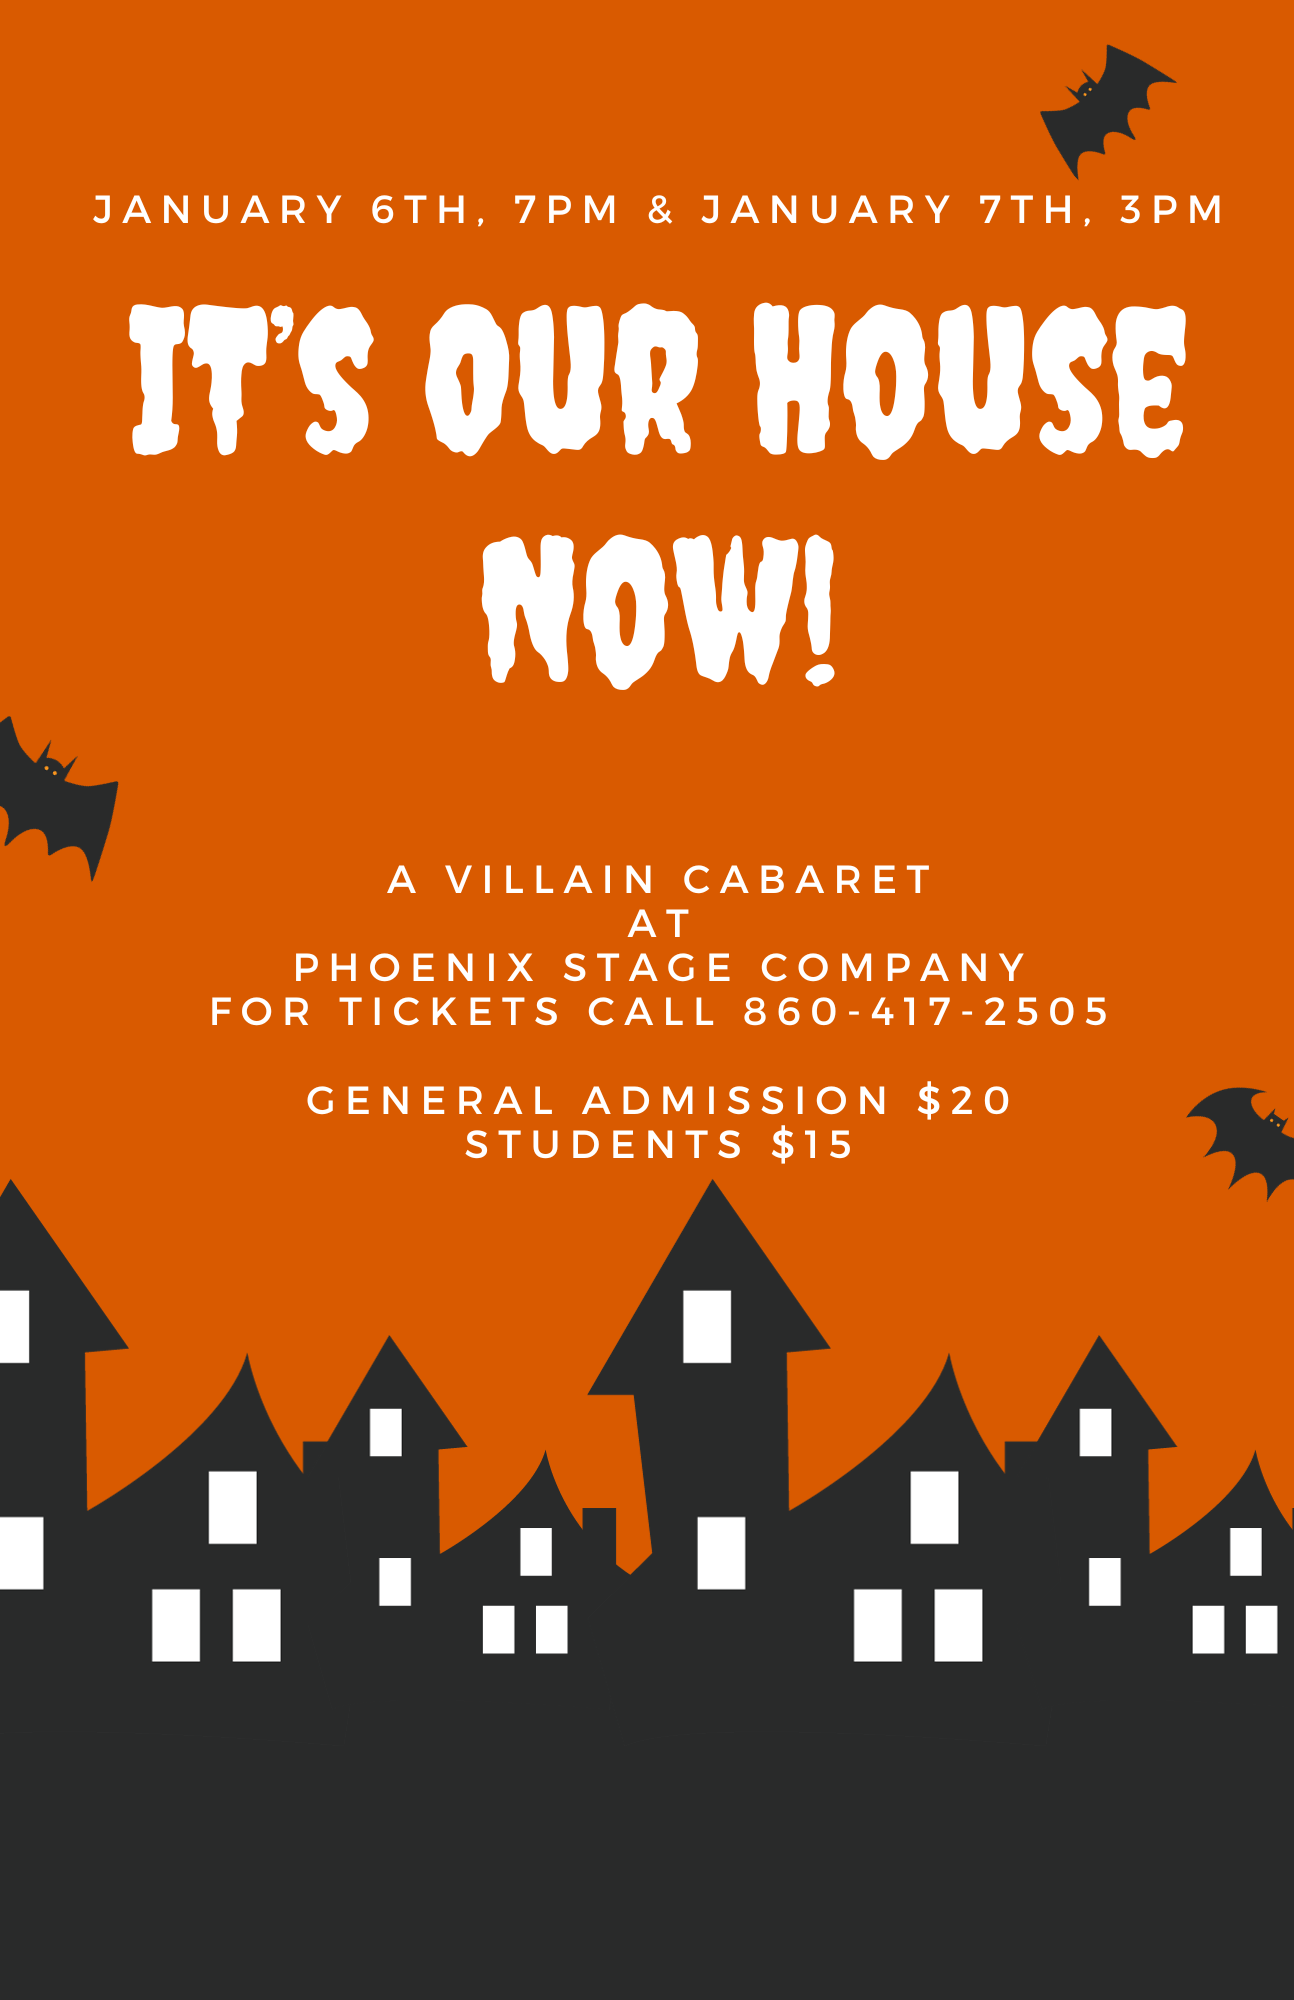 IT'S OUR HOUSE NOW! A Villain Cabaret on janv. 06, 19:00@Phoenix Stage Company - Achetez des billets et obtenez des informations surPhoenix Stage Company phoenixstagecompany